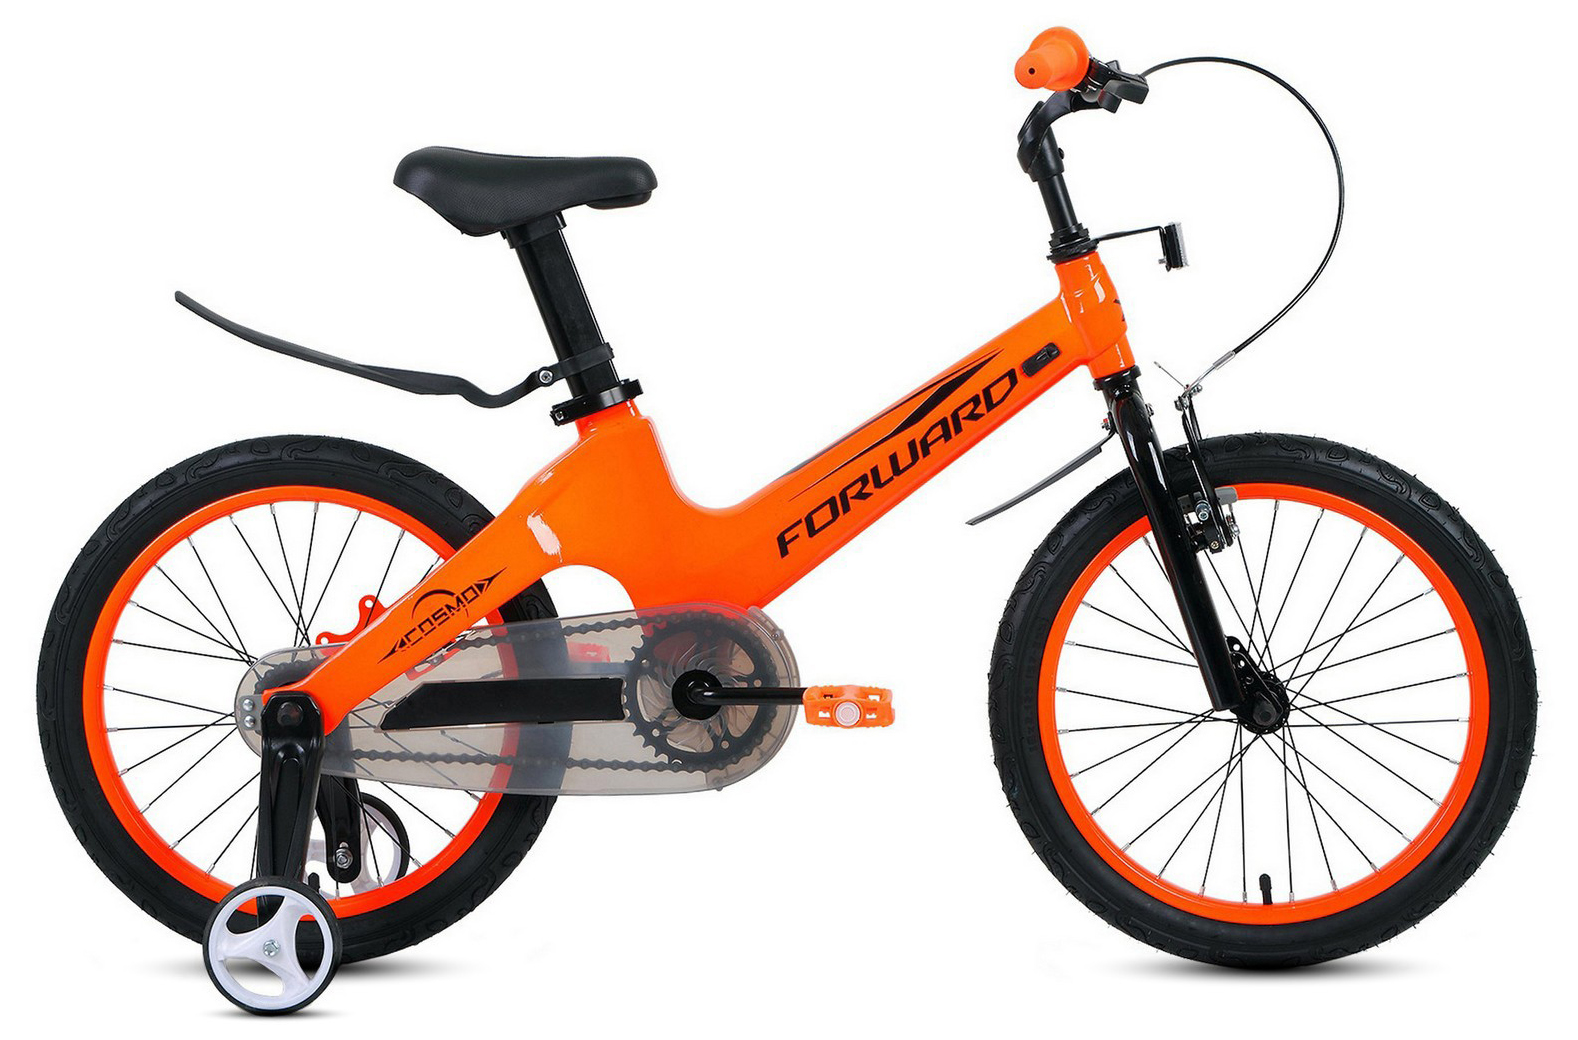  Отзывы о Детском велосипеде Forward Cosmo 18 2021